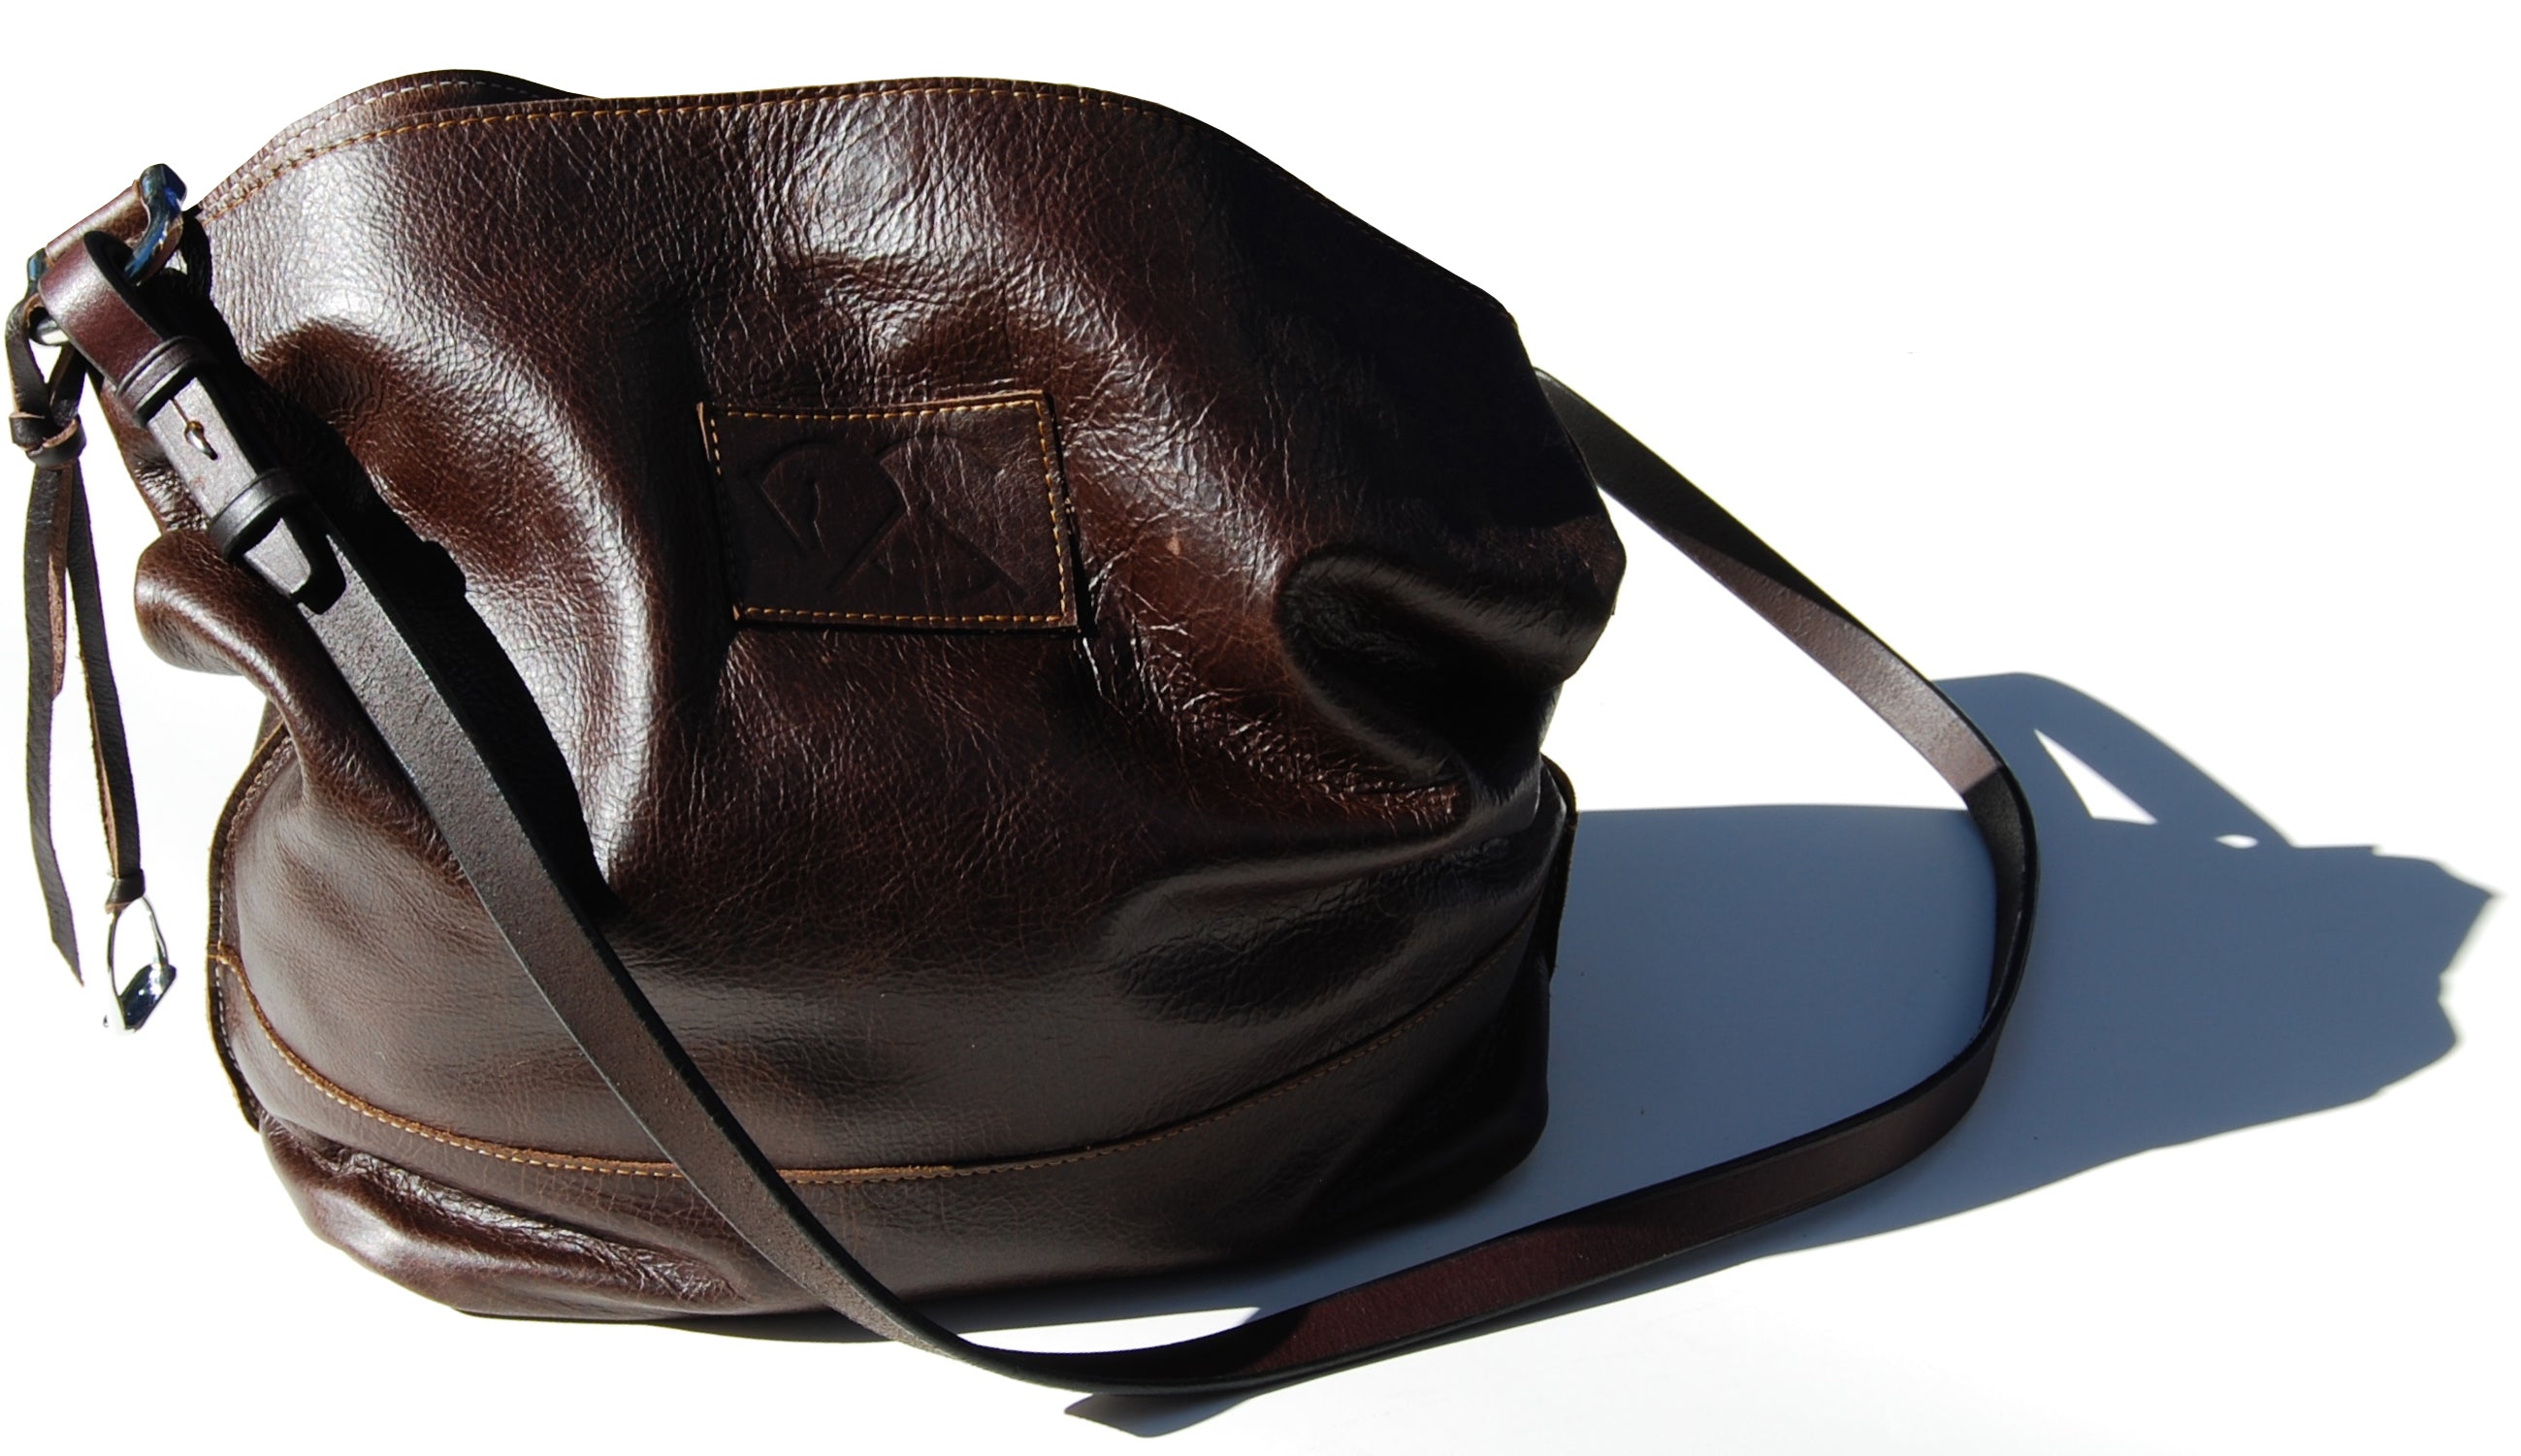 MUSTANG in sienna brown | Equestrian Shoulder Bag | Bucket Bag - AtelierCG™